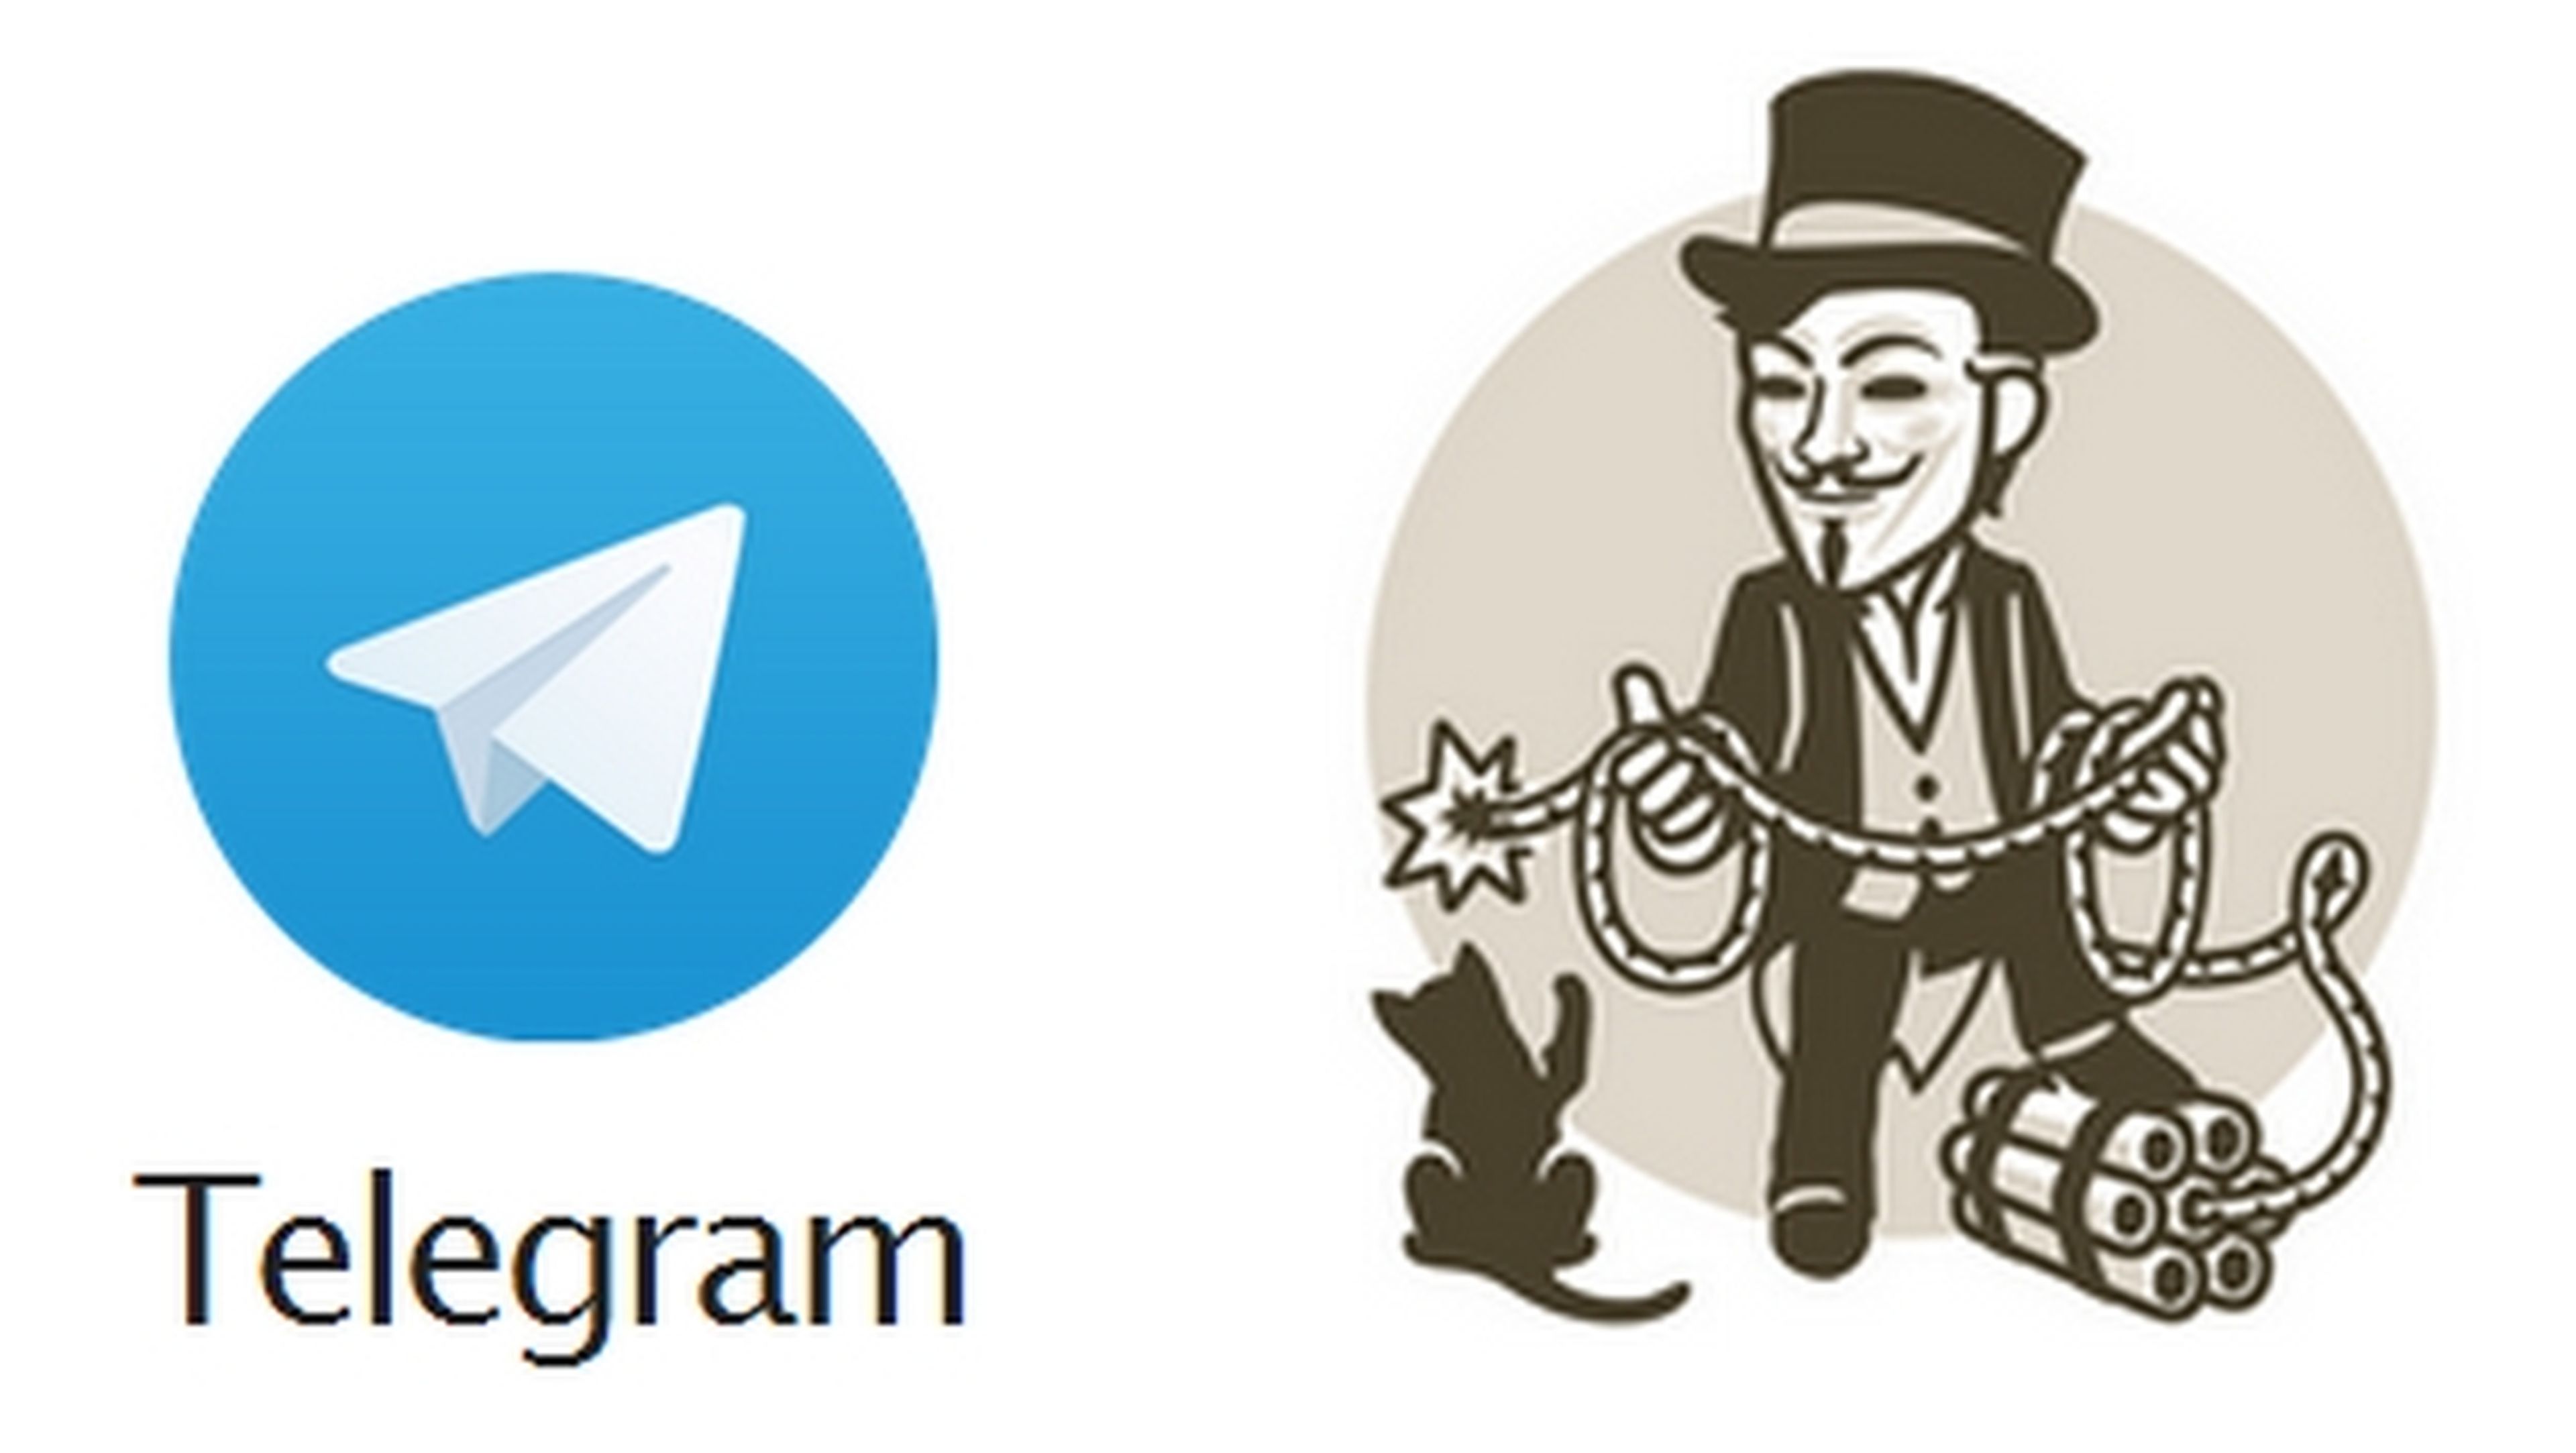 Telegram cerrará cuentas por inactividad el 19 de mayo.